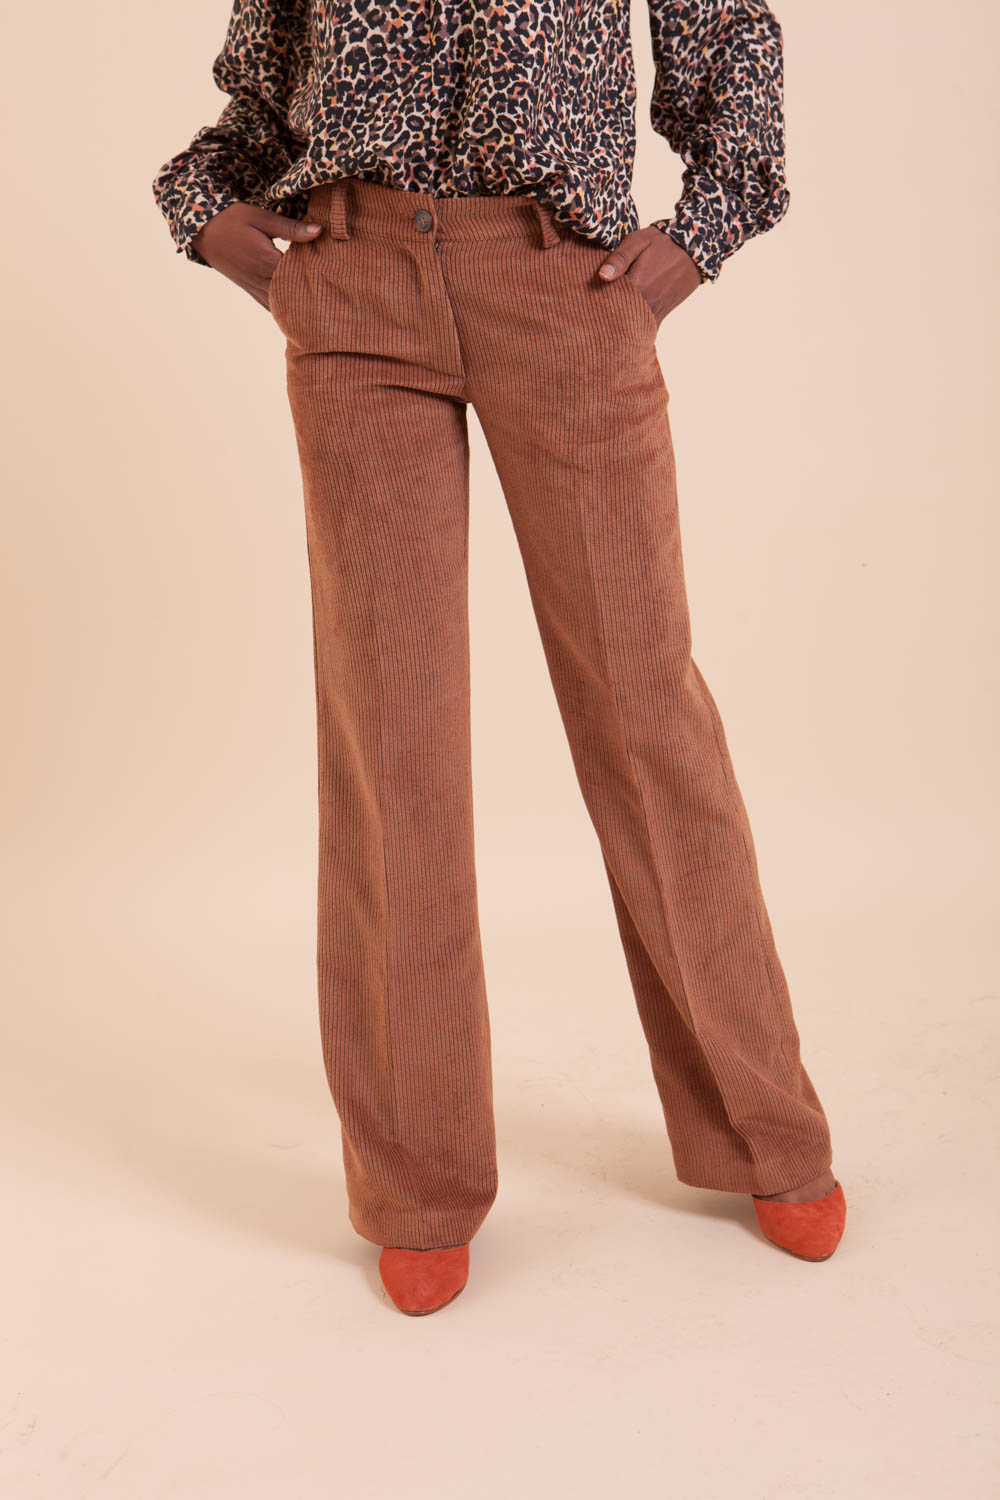 Joli pantalon femme en velours couleur Camel coupe flare est un indispensable une mode hiver, il ajoutera du style à votre garde-robe. Made In France.